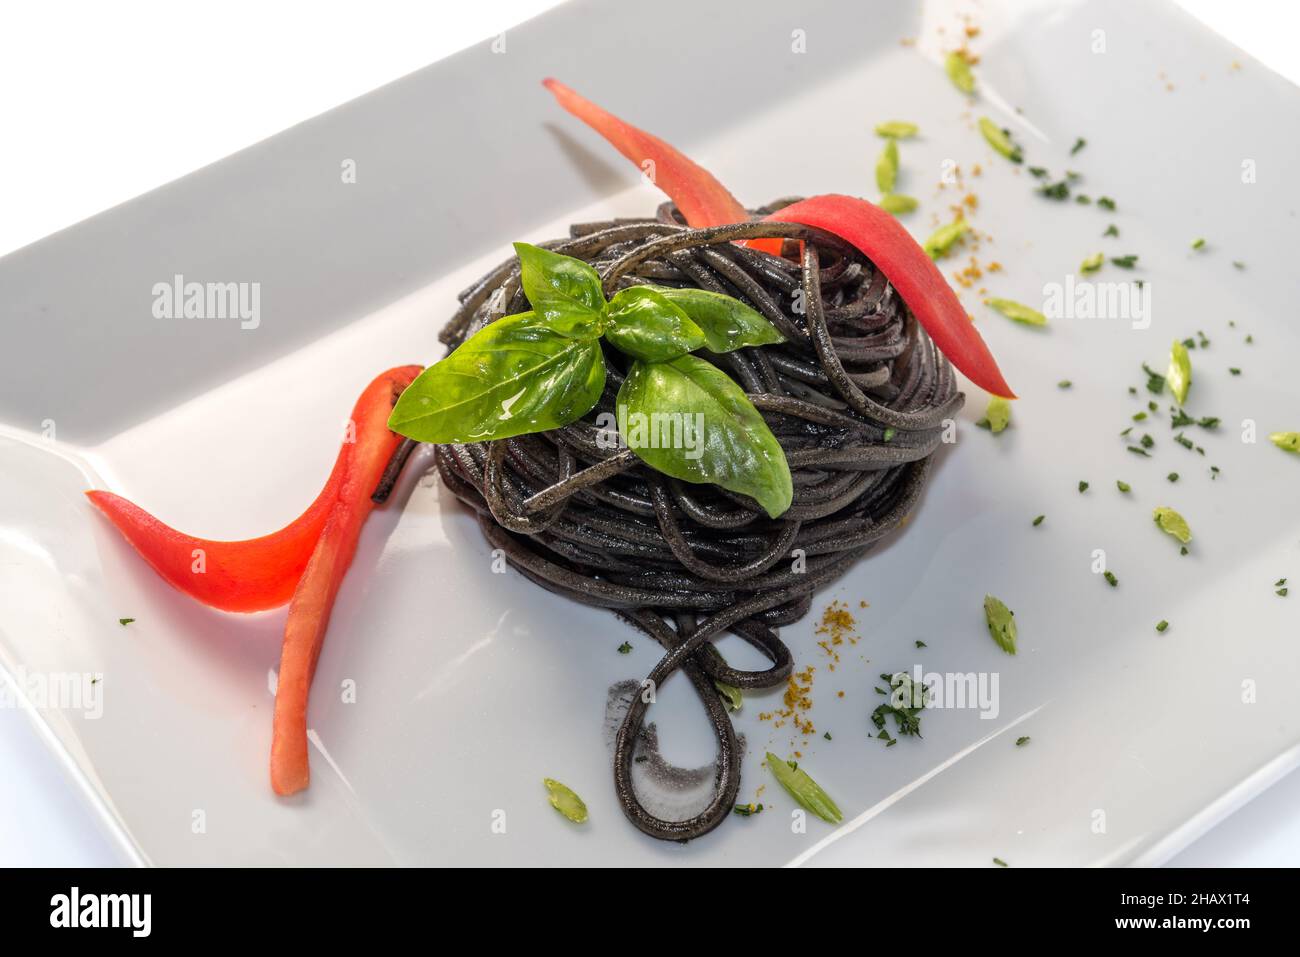 Spaghetti inchiostro calamaro nero - pasta italiana al nero di seppia con foglie di basilico - primo piano in un piatto bianco isolato su bianco Foto Stock